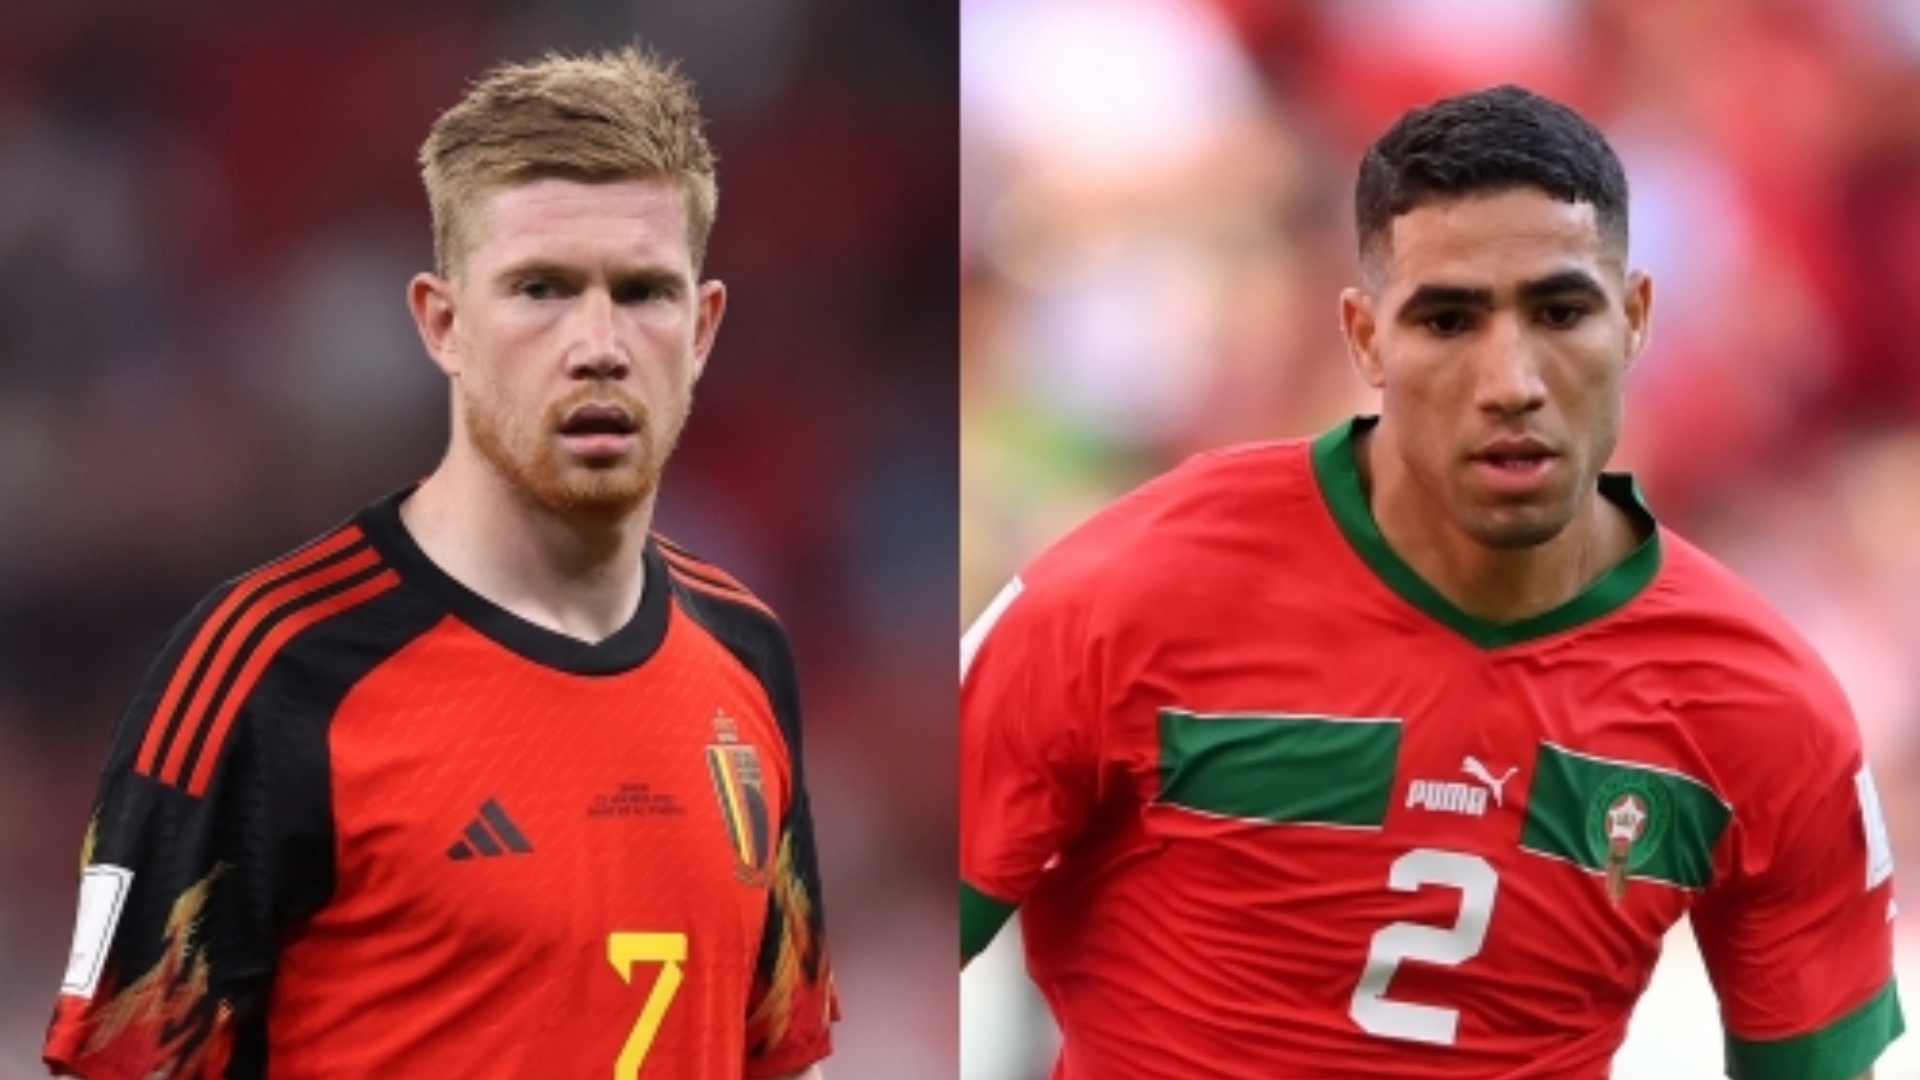 تشكيلة بلجيكا والمغرب في كأس العالم 2022